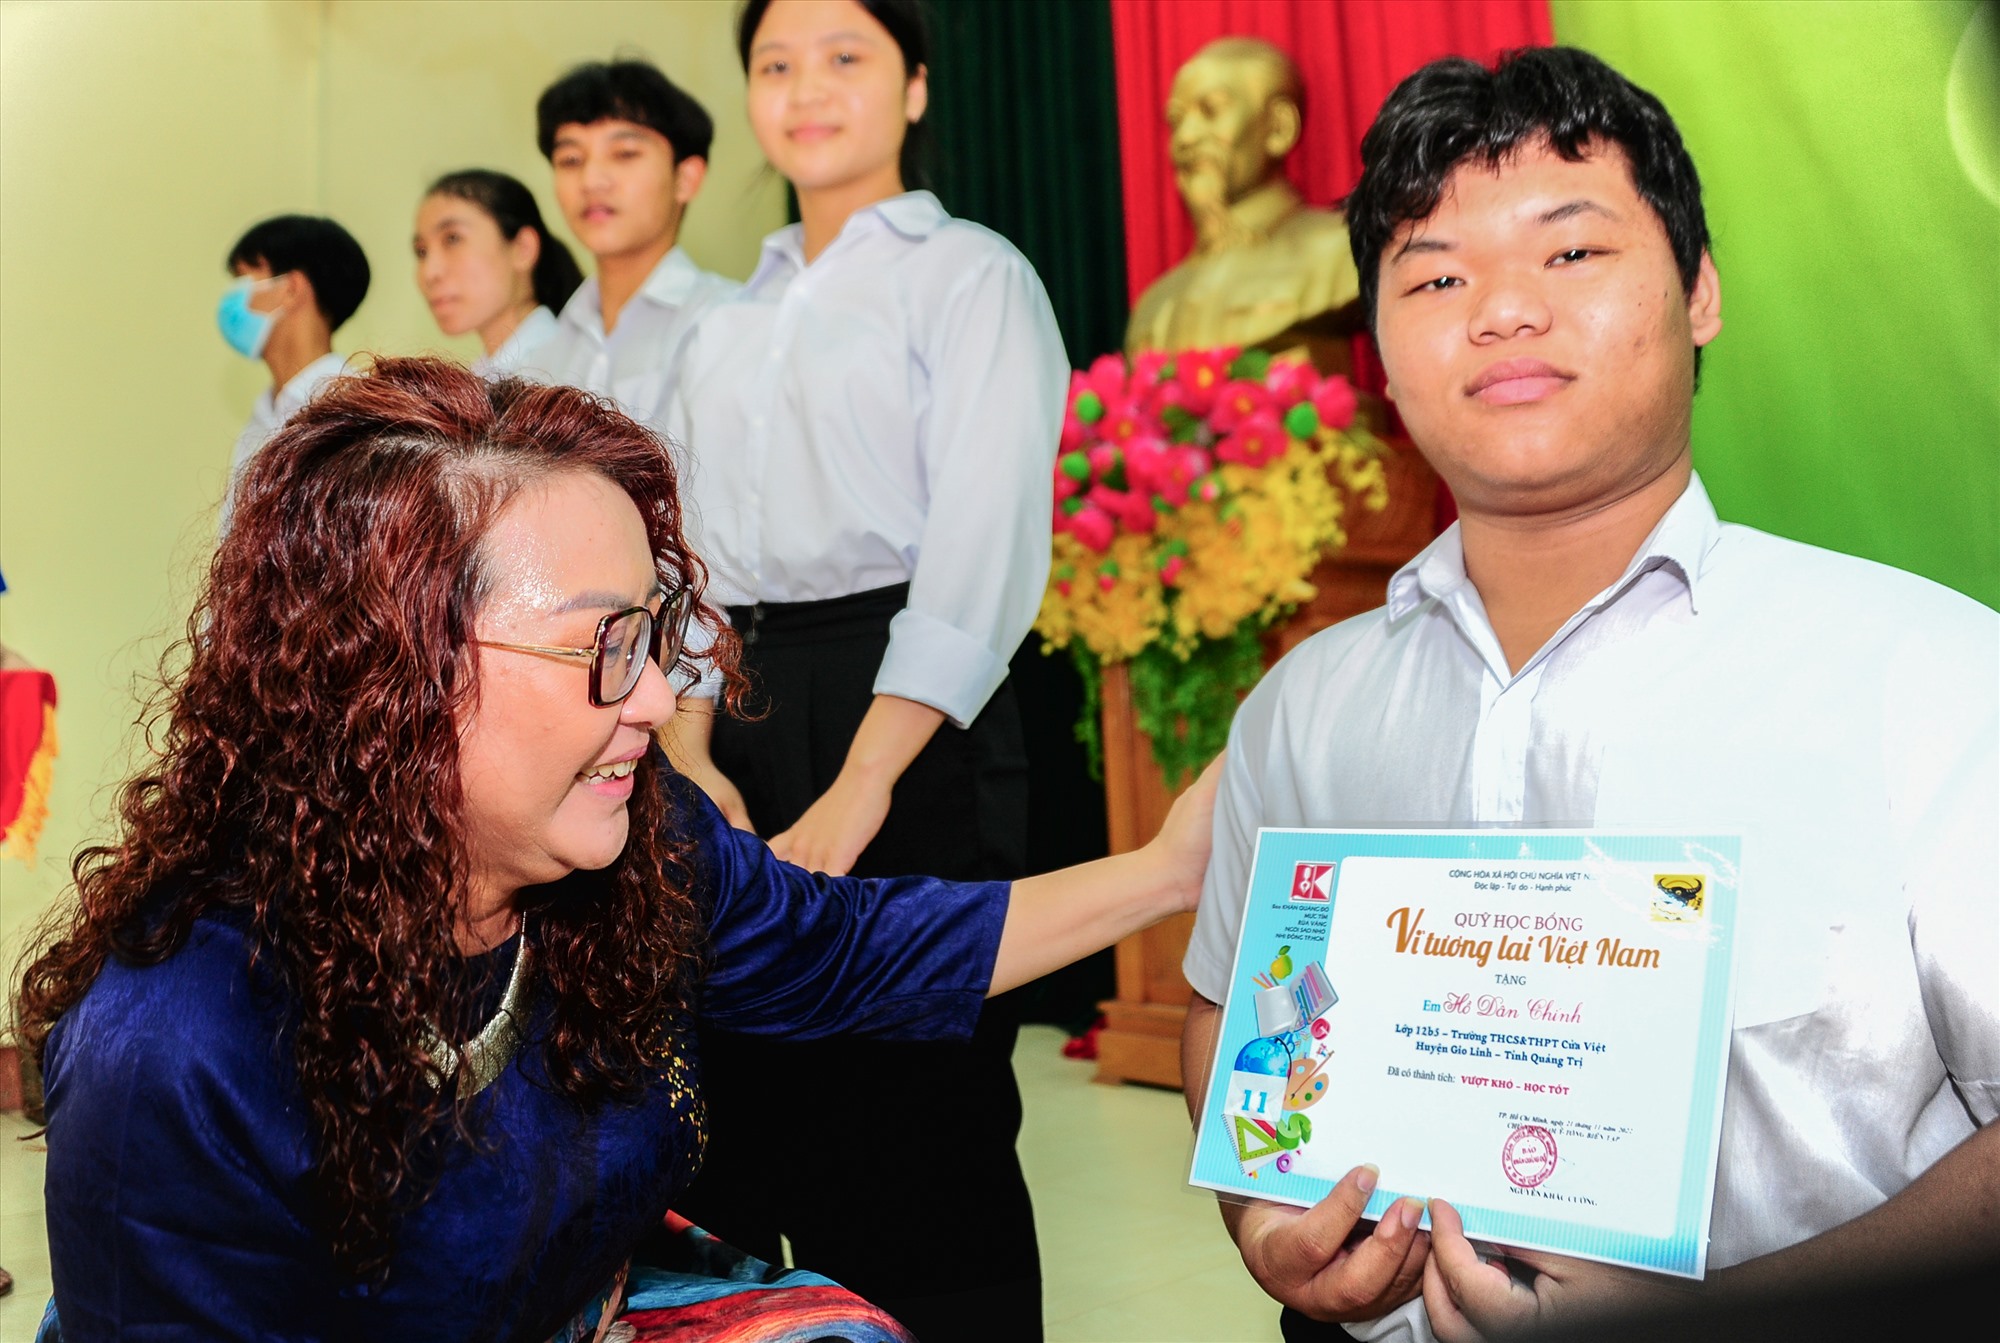 Phó Tổng Biên tập Báo Mực Tím Trần Gia Bảo trao học bổng cho 1 học sinh vượt khó học tốt bị khuyết tật ở chân - Ảnh: Trần Tuyền